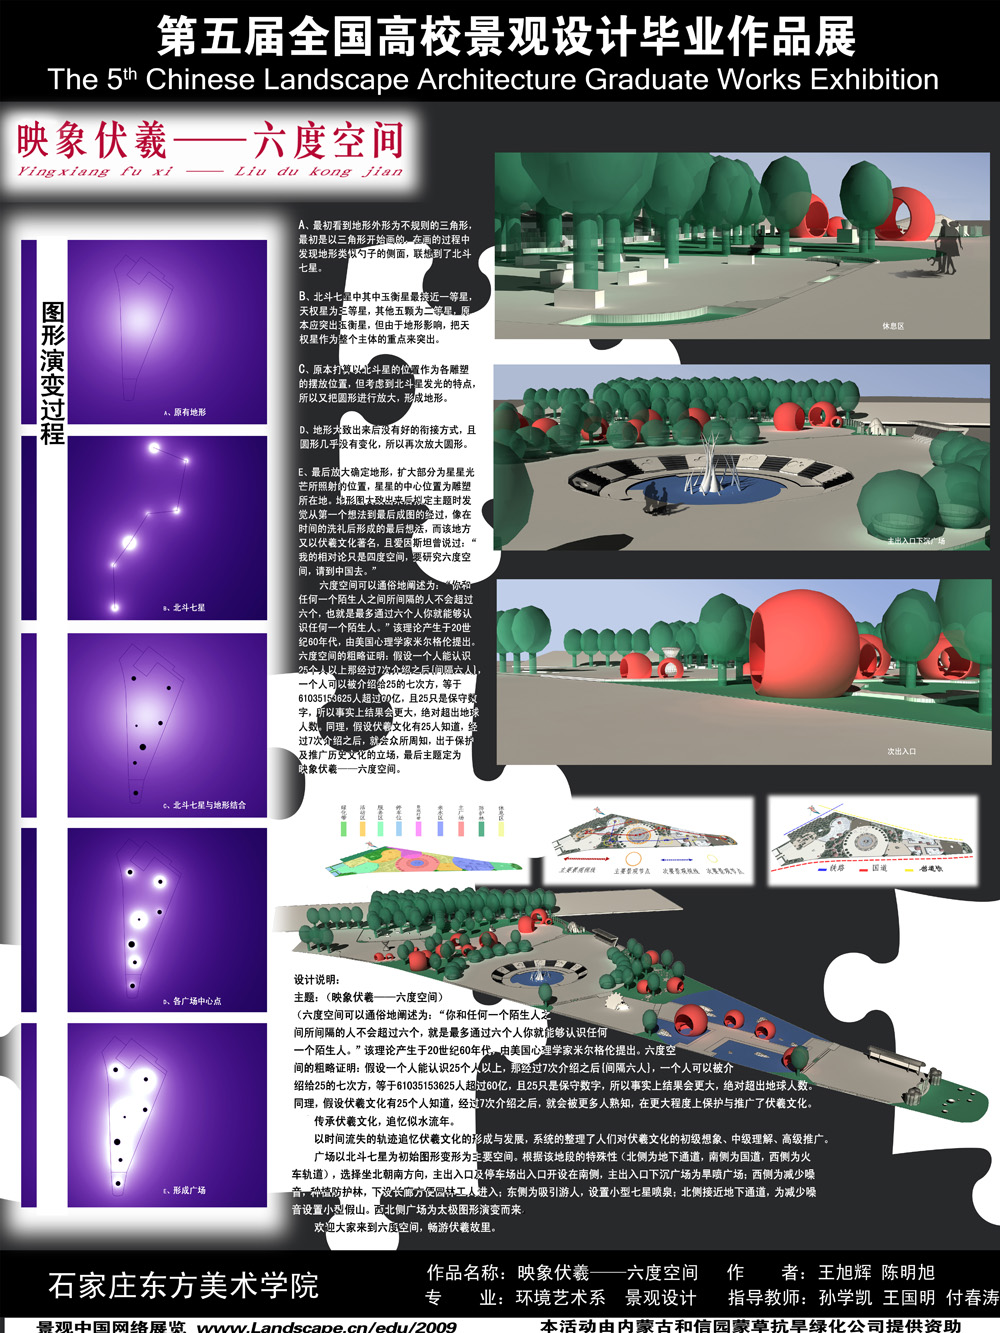 新乐市文化广场景观规划设计——映像伏羲●六度空间-1